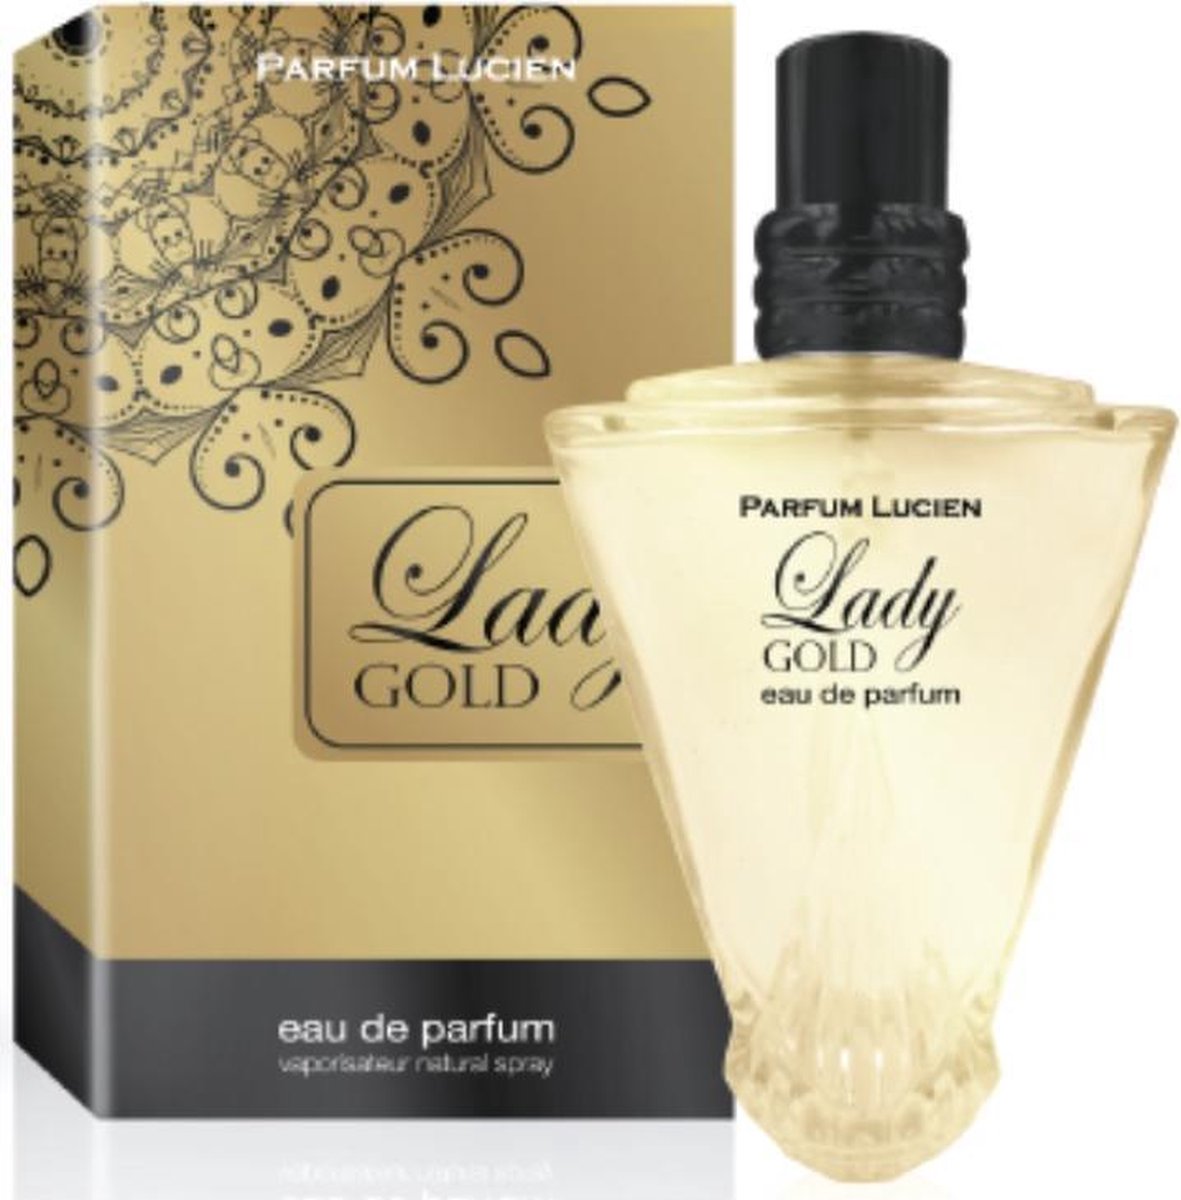 Parfum Lucien Lady Gold Edp - Parfum - Vrouwen - Dames - Valentijn.